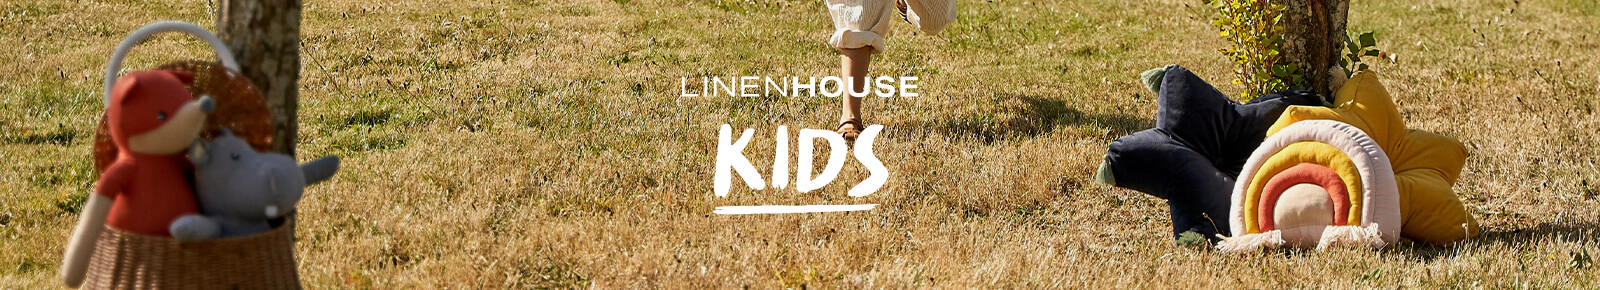 Linen House Kids